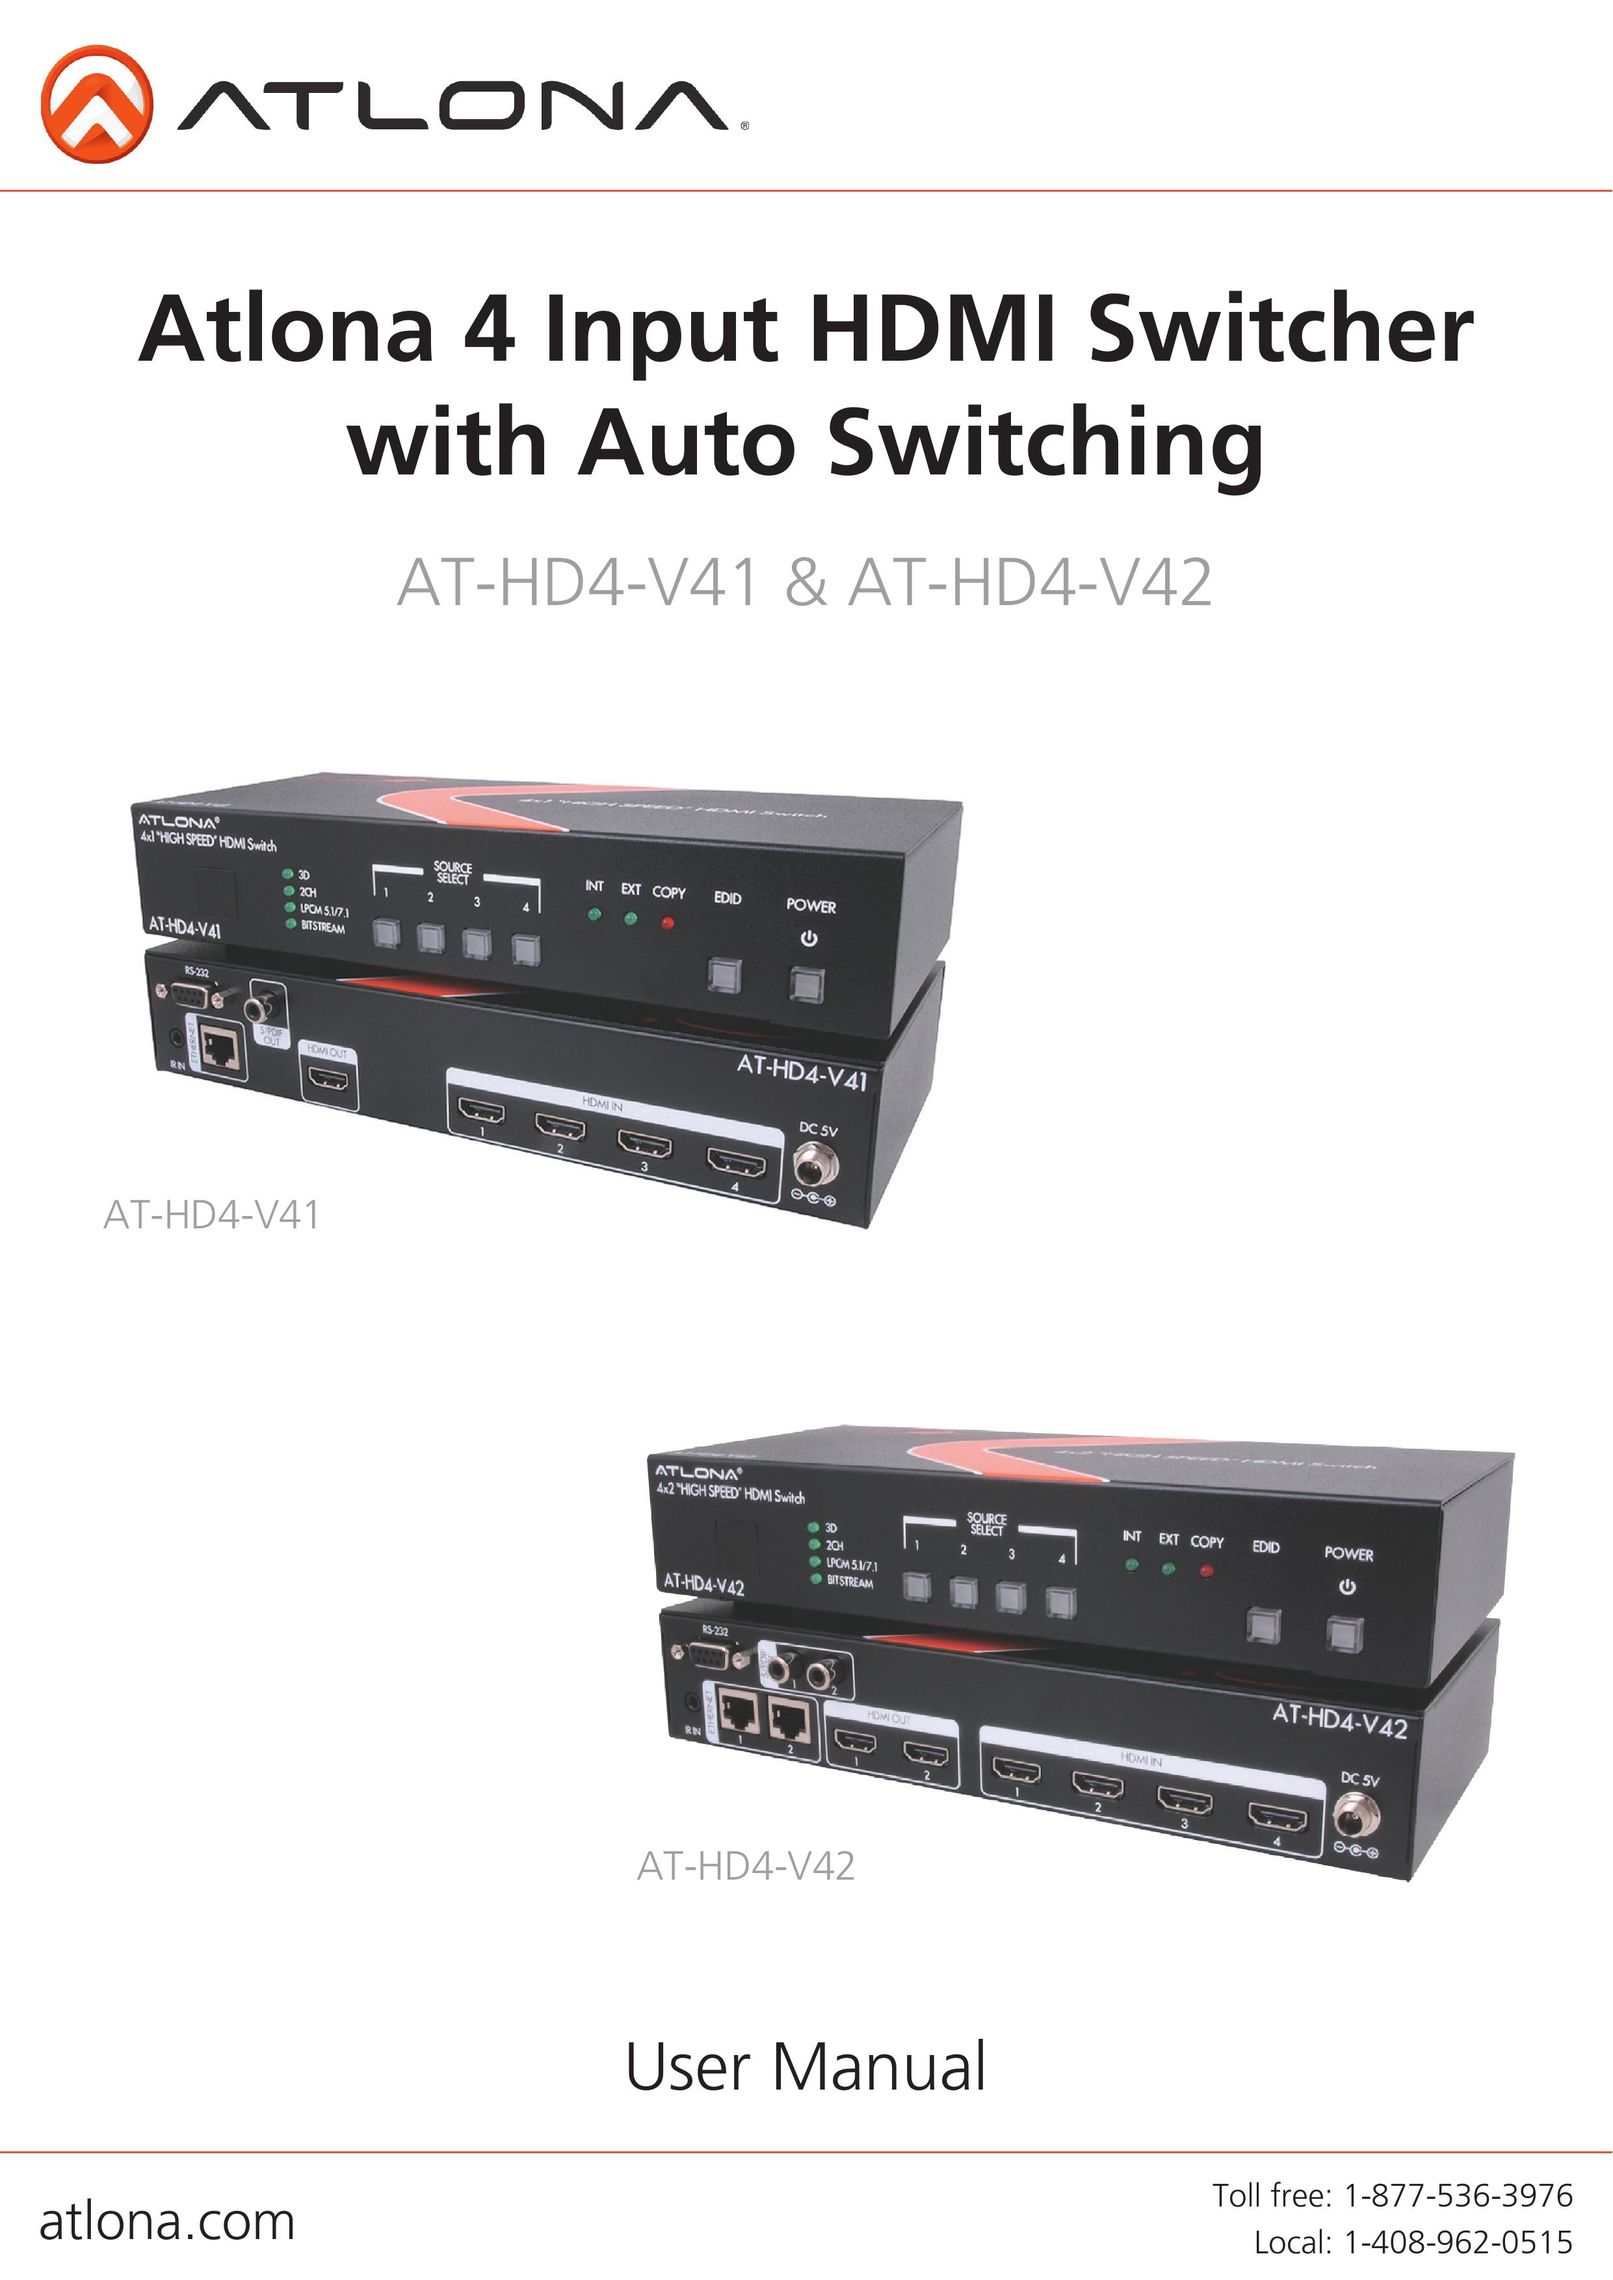 Atlona AT-HD4-V42 Plumbing Product User Manual